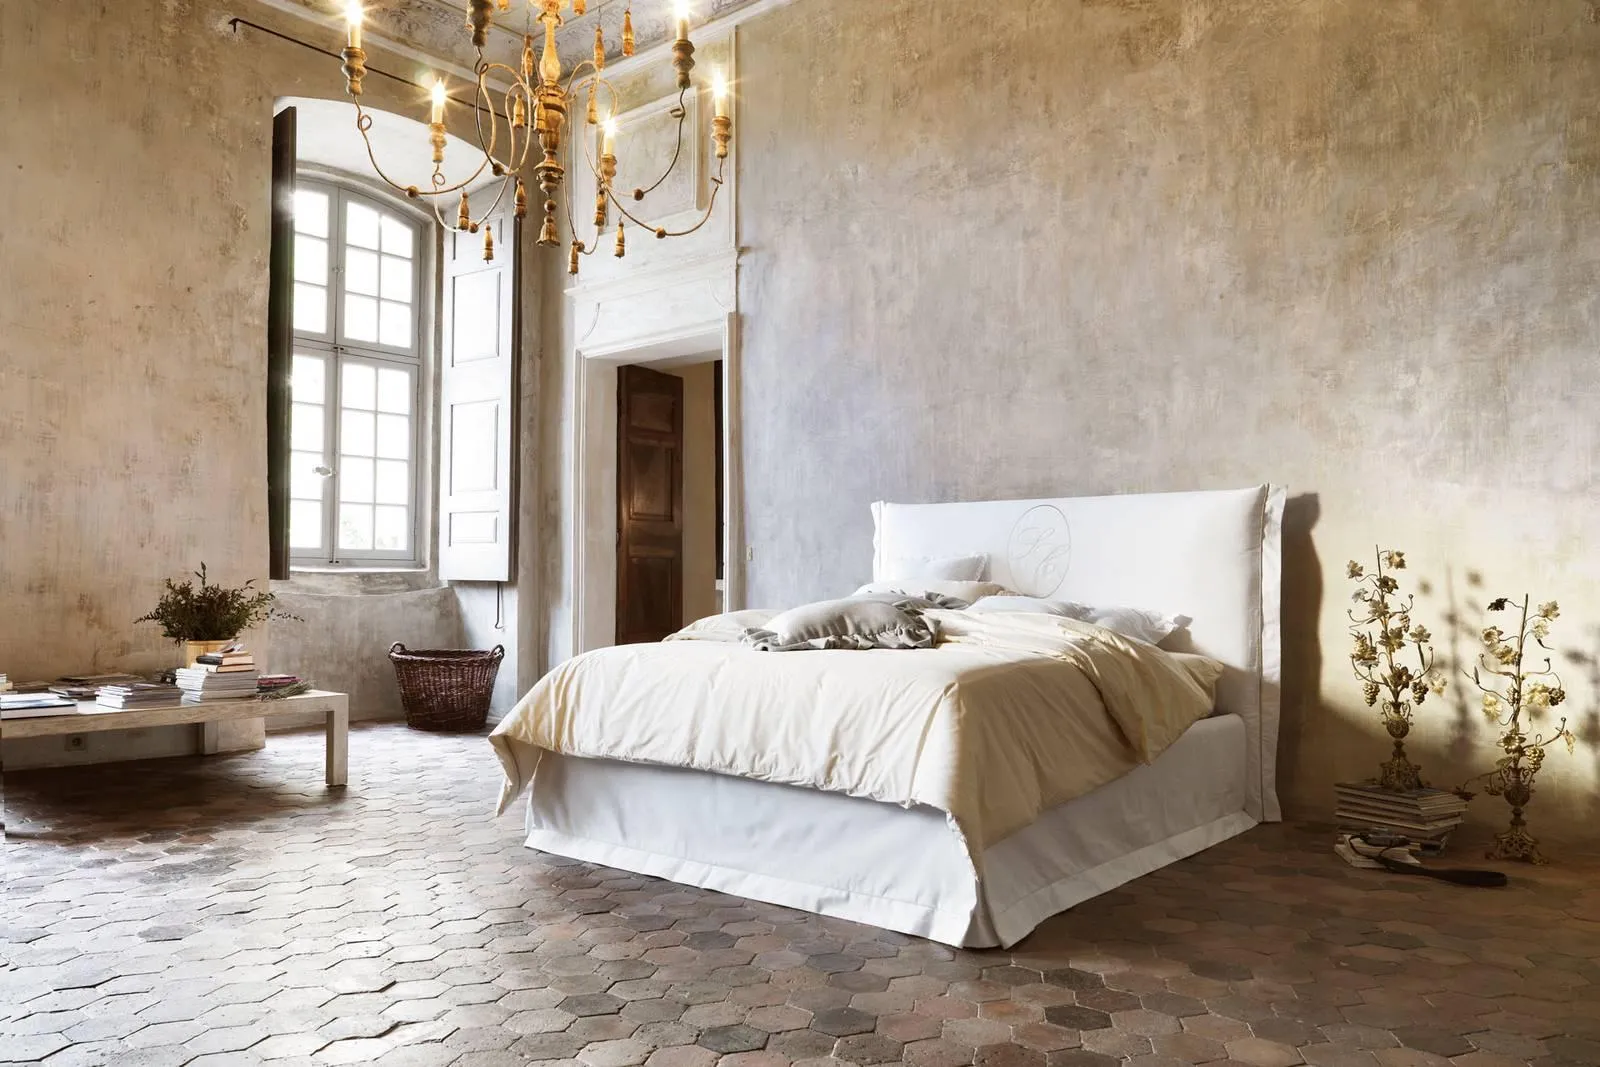 Camera da letto classica I Maggiolini, comò, specchiera, poltrona